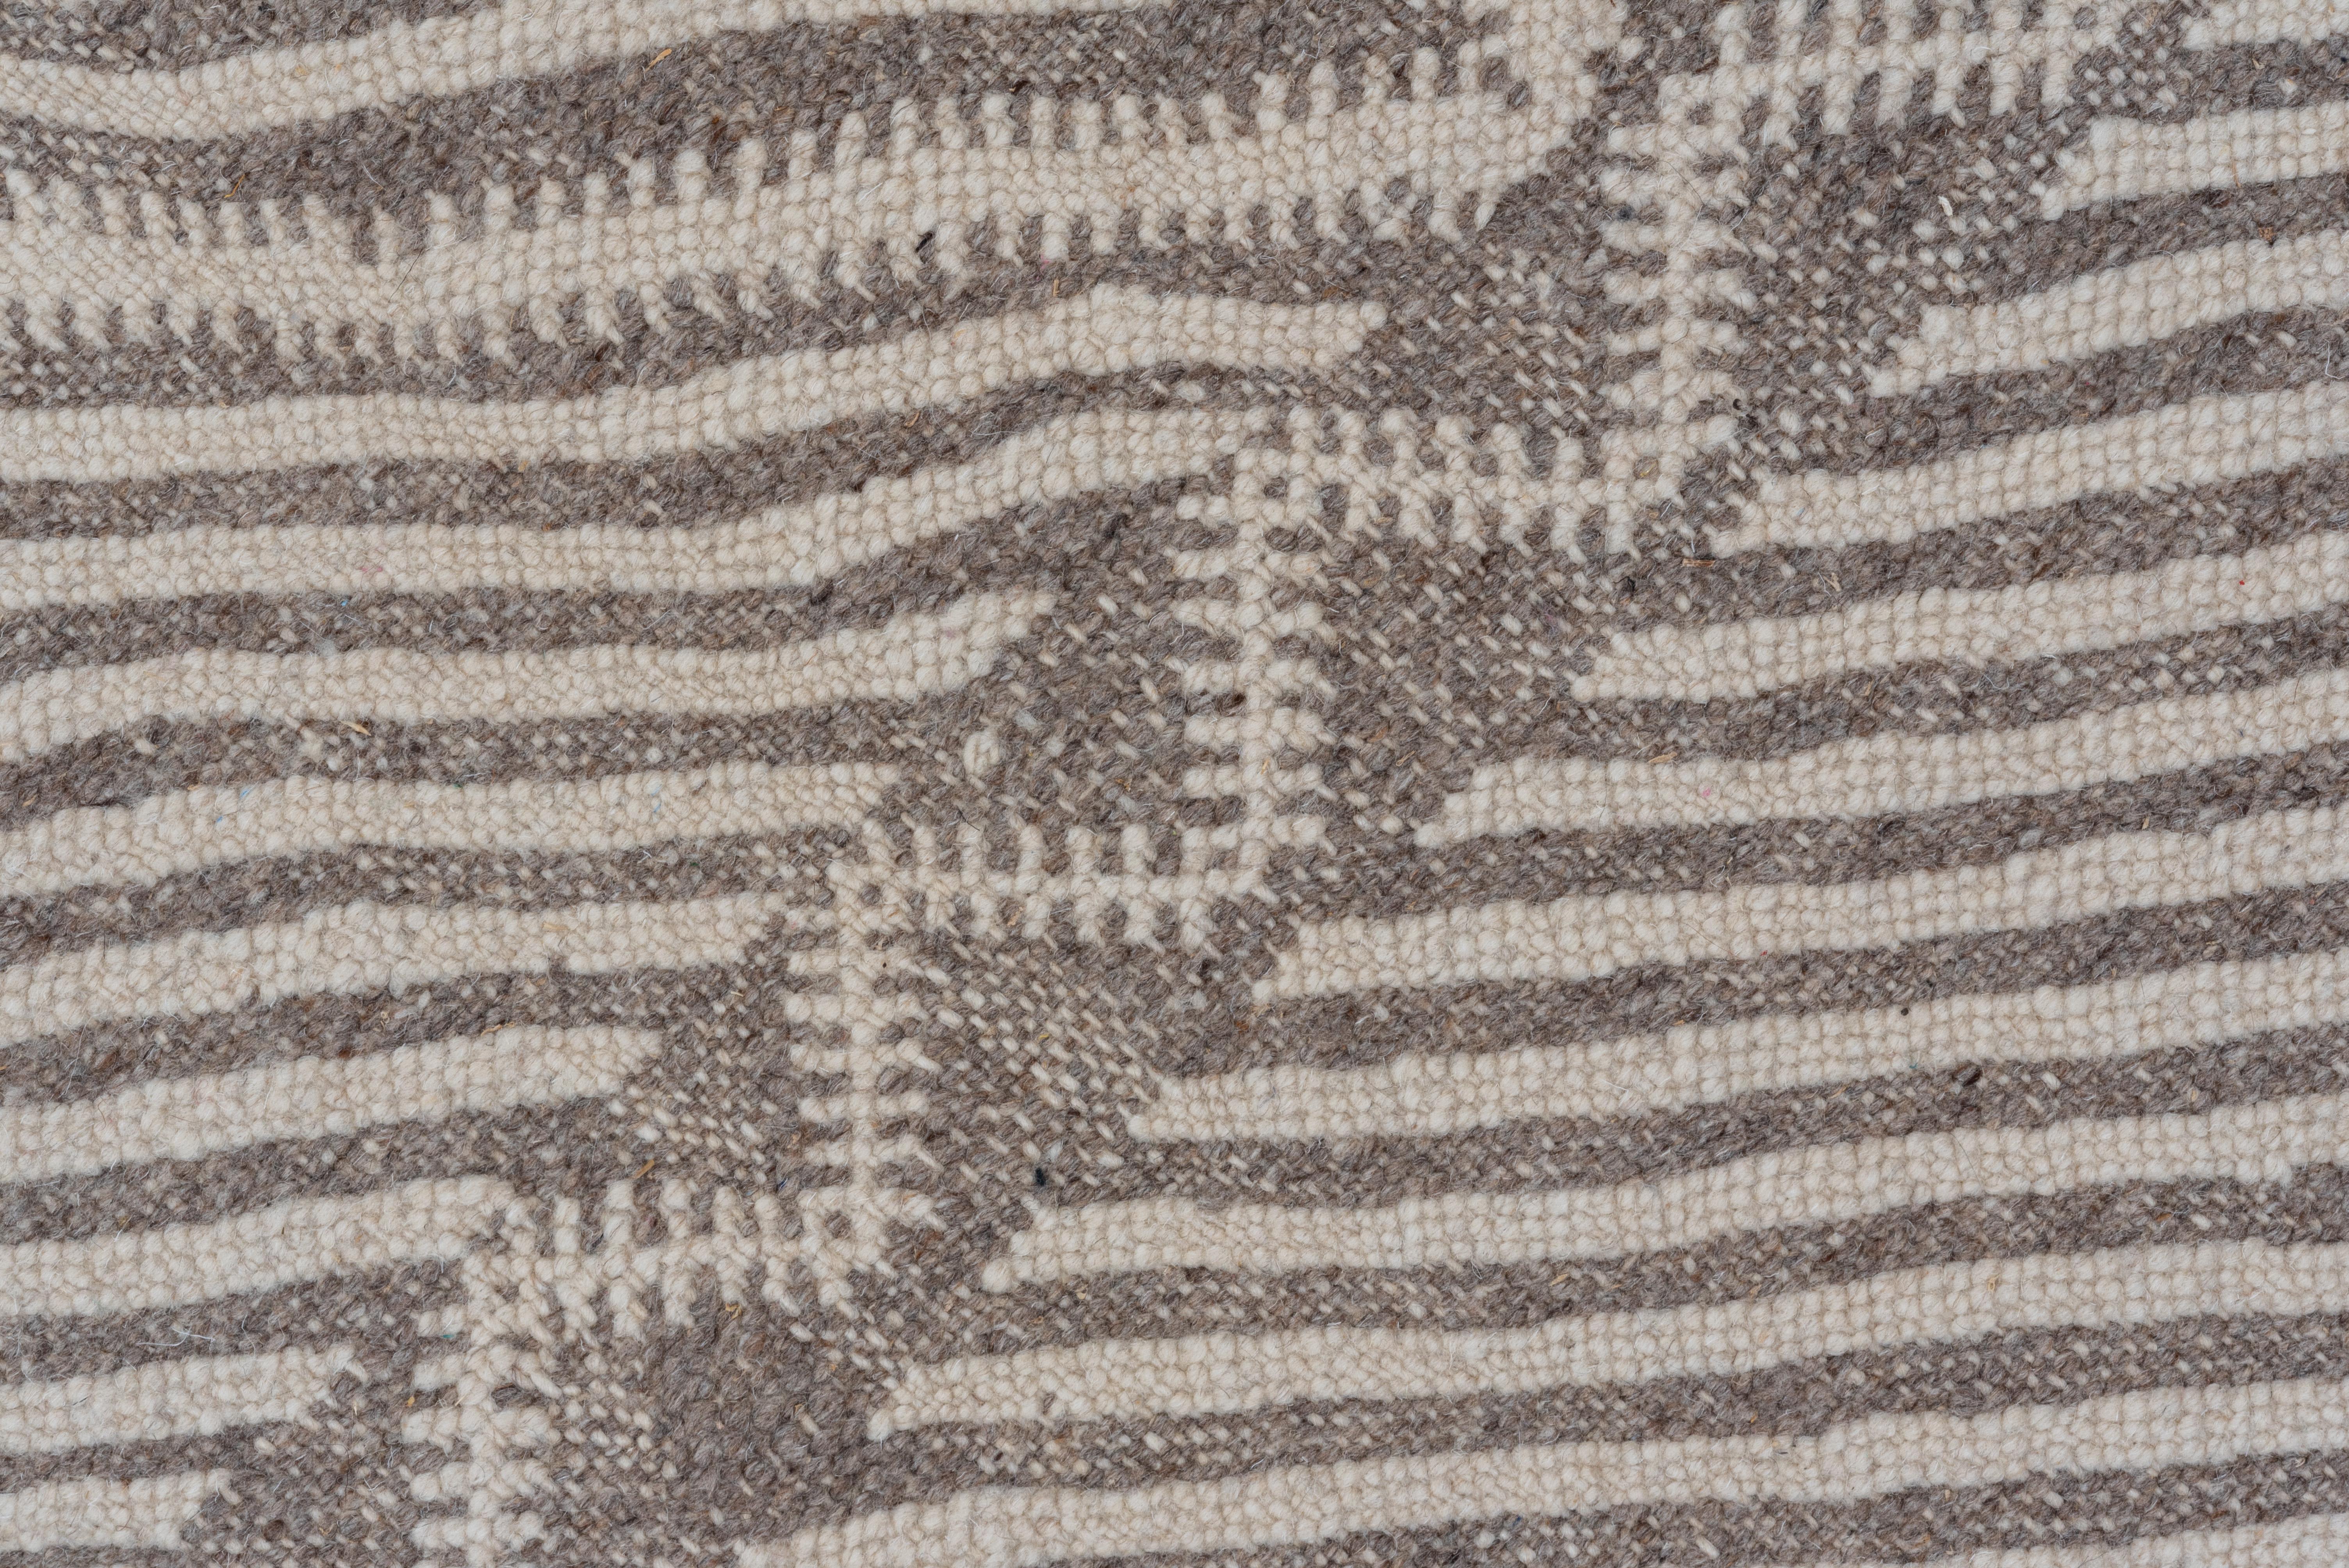 Un beau tapis marocain neutre plus clair, tissé à plat, qui est un peu plus épais que la moyenne des tapis tissés à plat. Le design s'inspire des motifs culturels marocains. Magnifique tapis de style bohème.